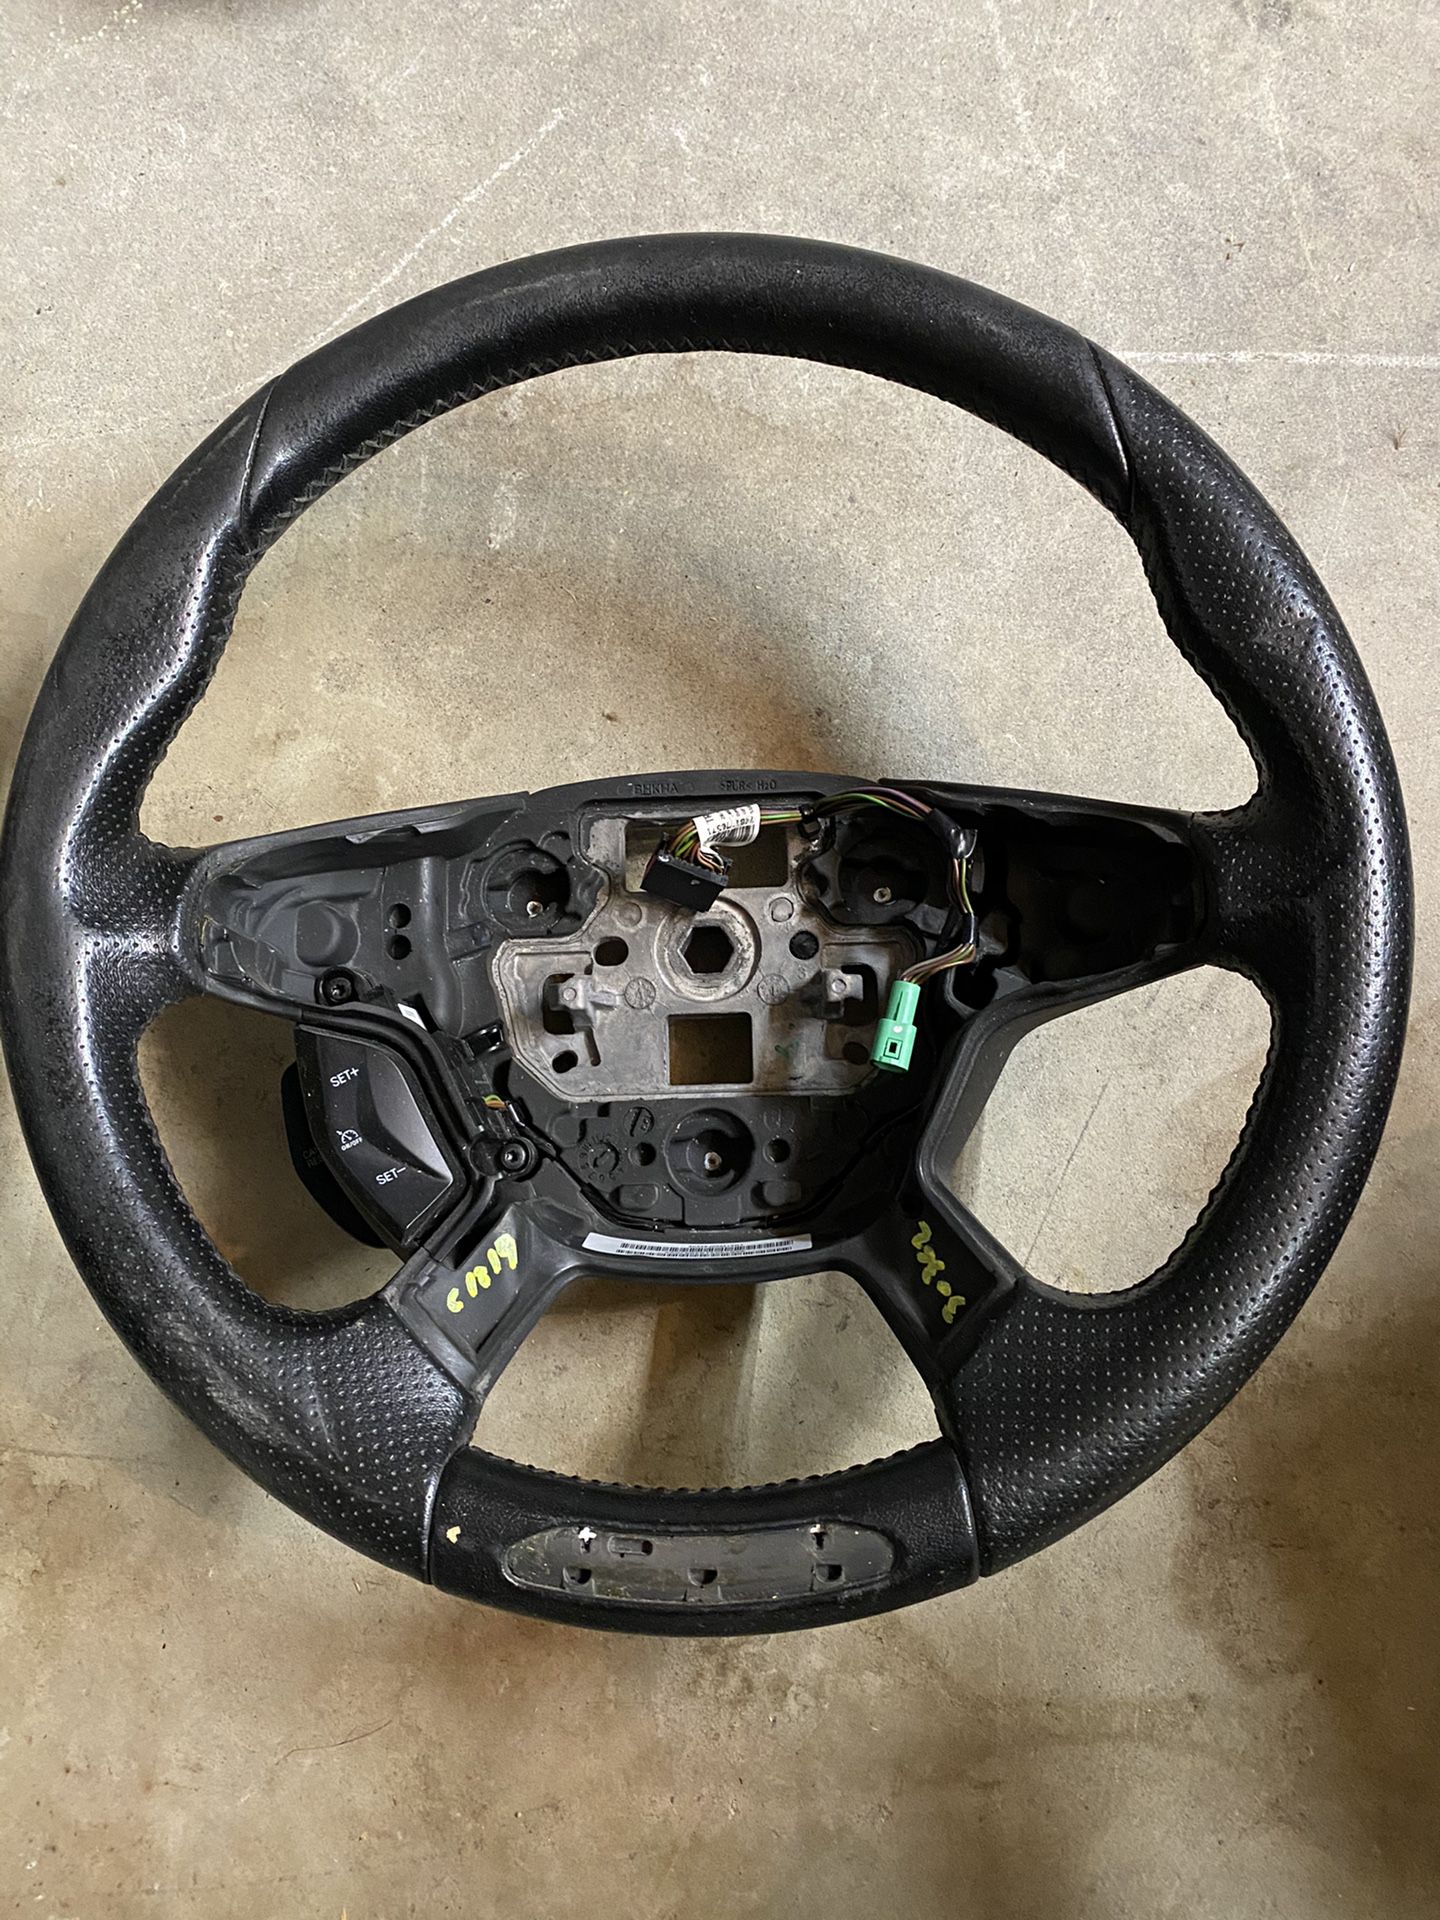 Ford Focus steering wheel